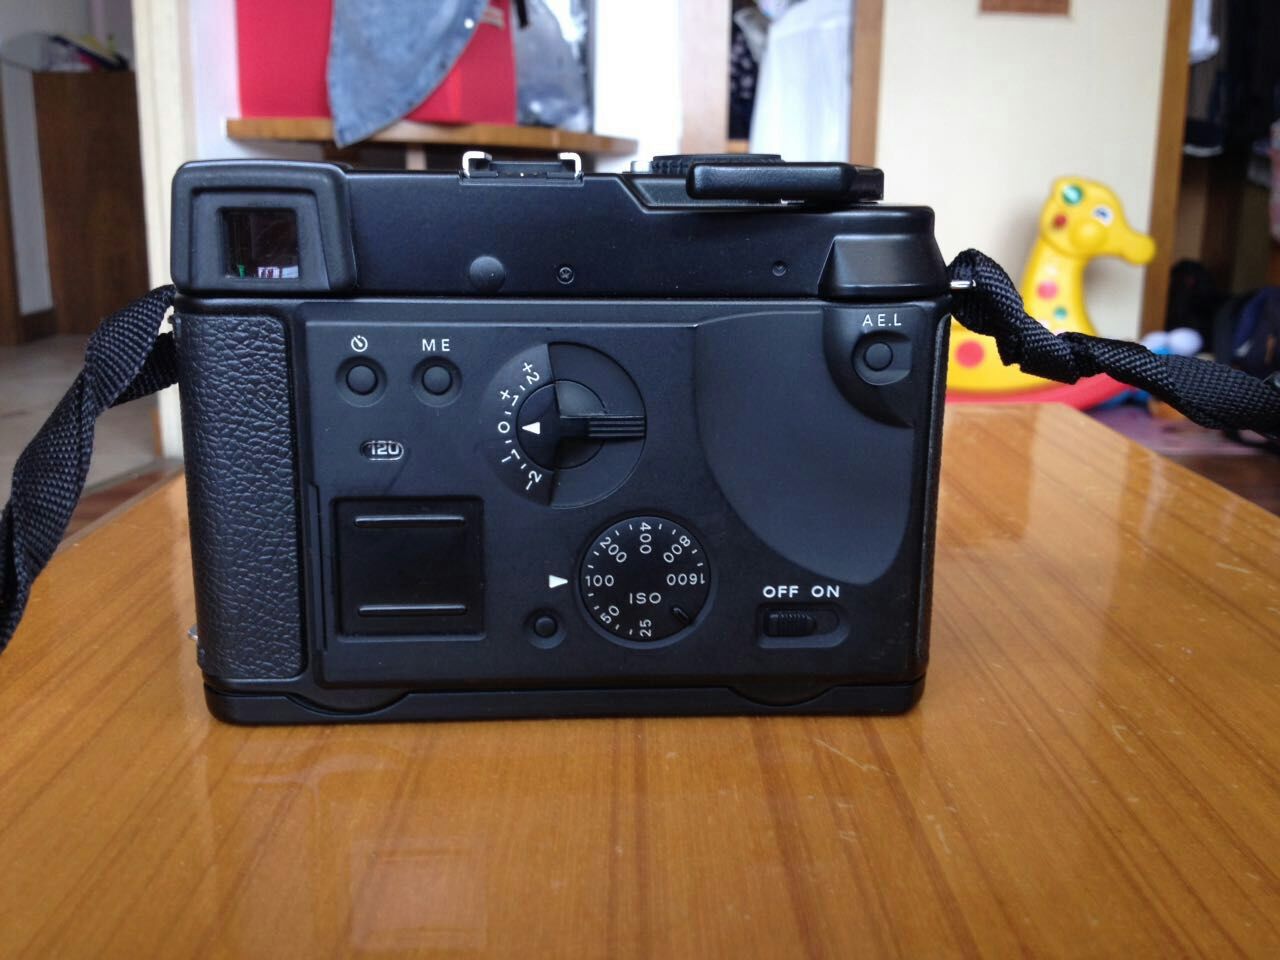 勃朗尼卡 rf645中幅相机 65mm(f4) 镜头